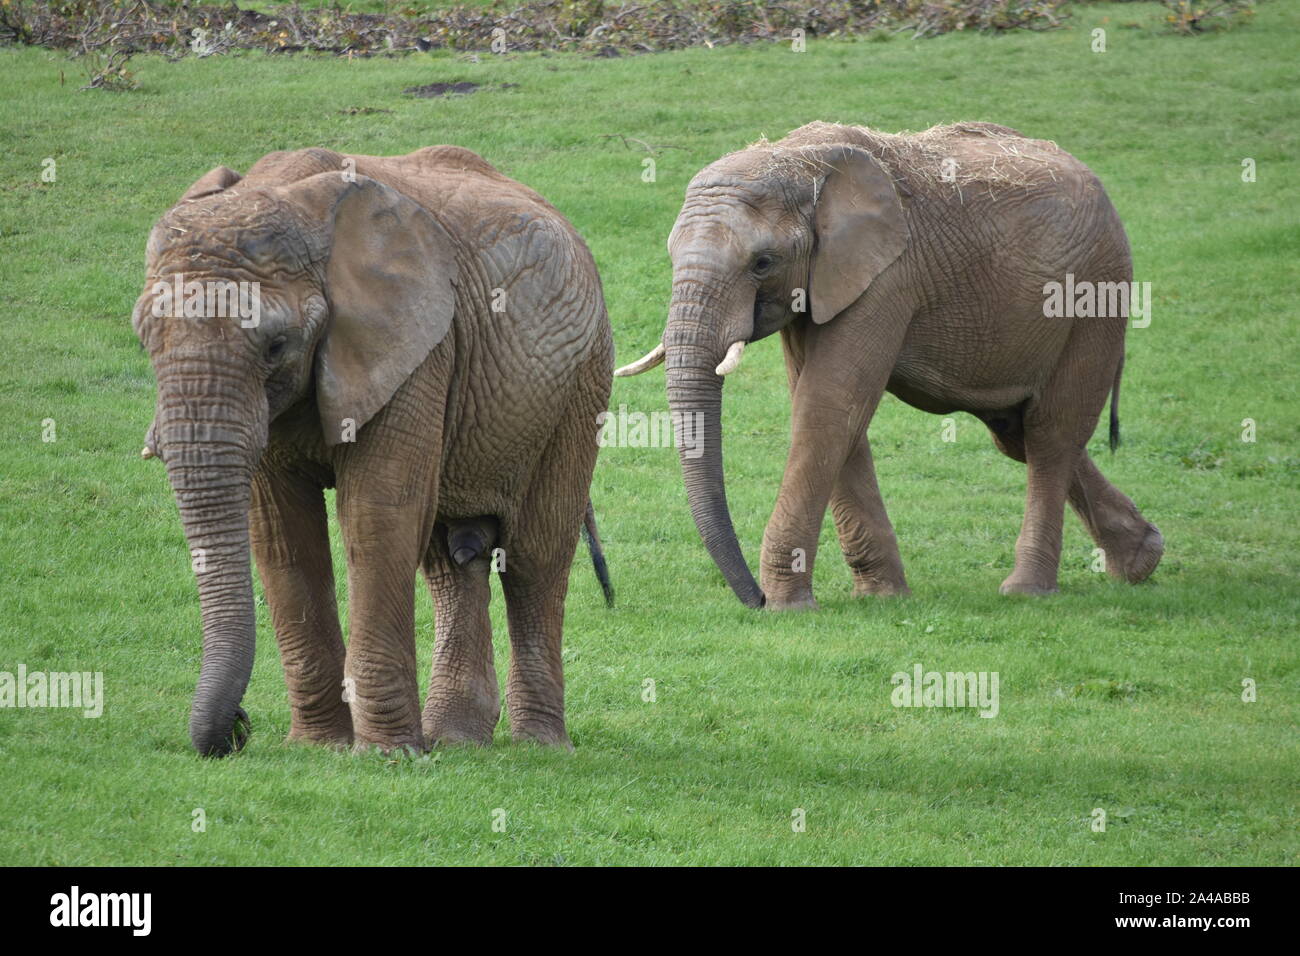 African elephant Noah's Ark Farm Stock Photo